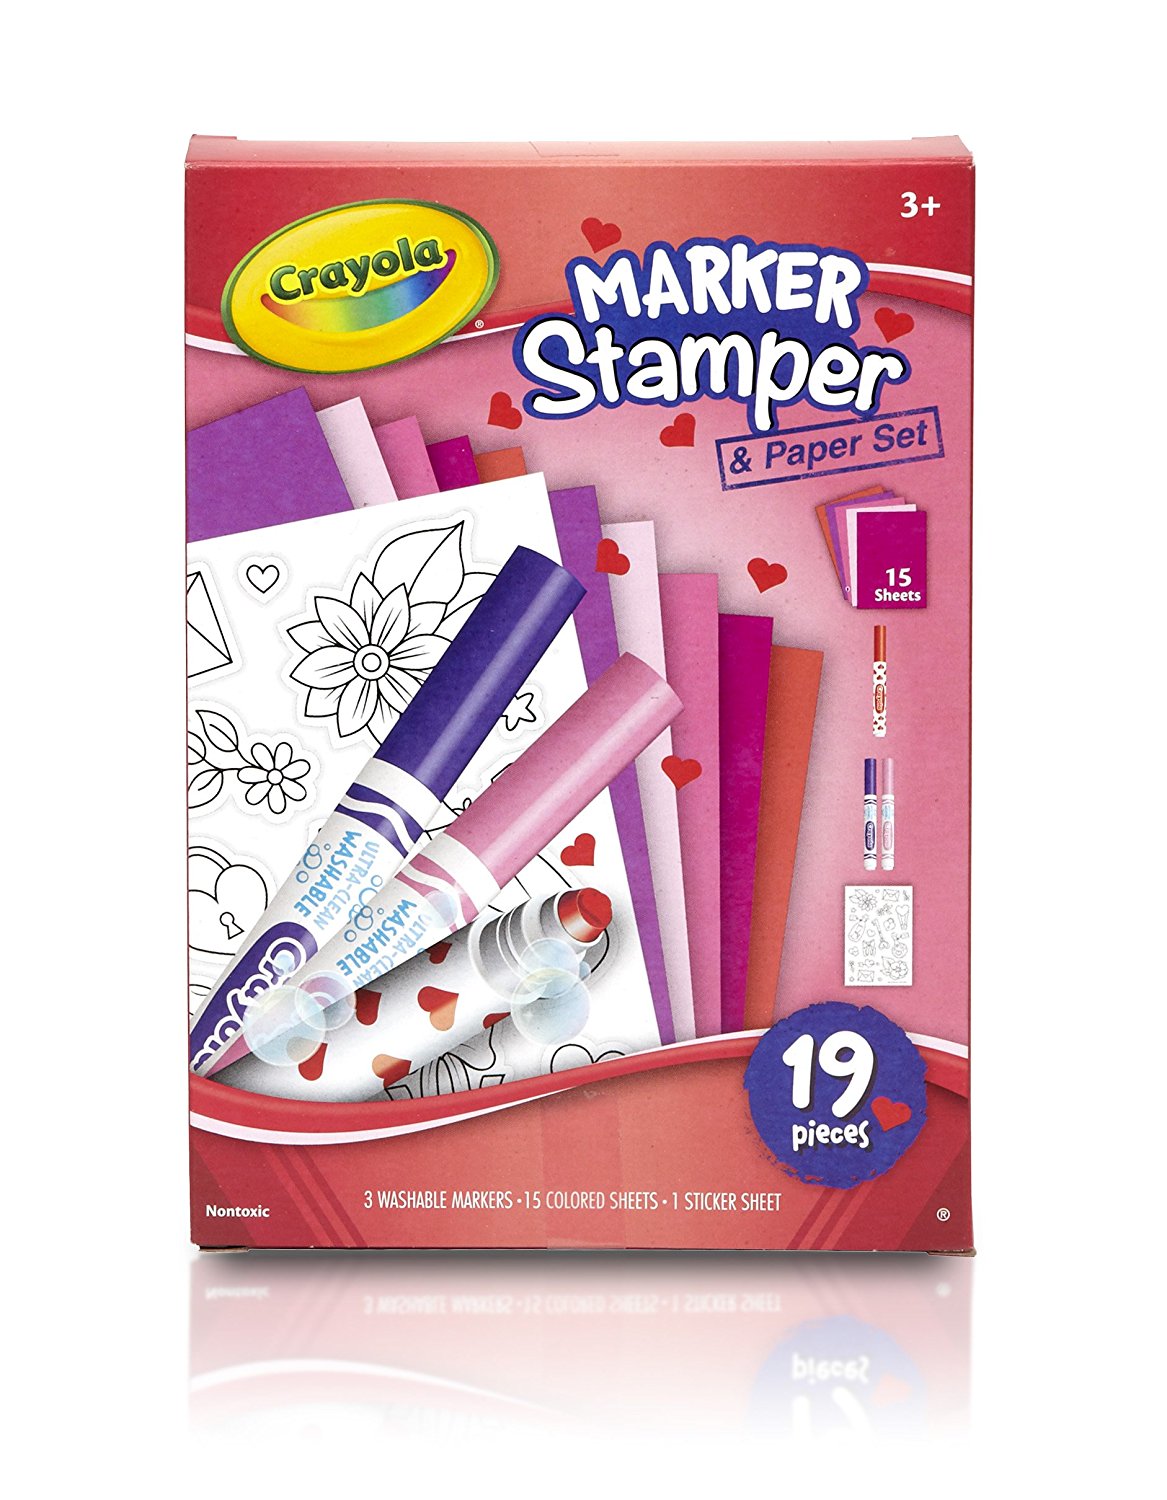 Crayola Valentine’s Marker Stamper & Paper Set – Just $6.00!